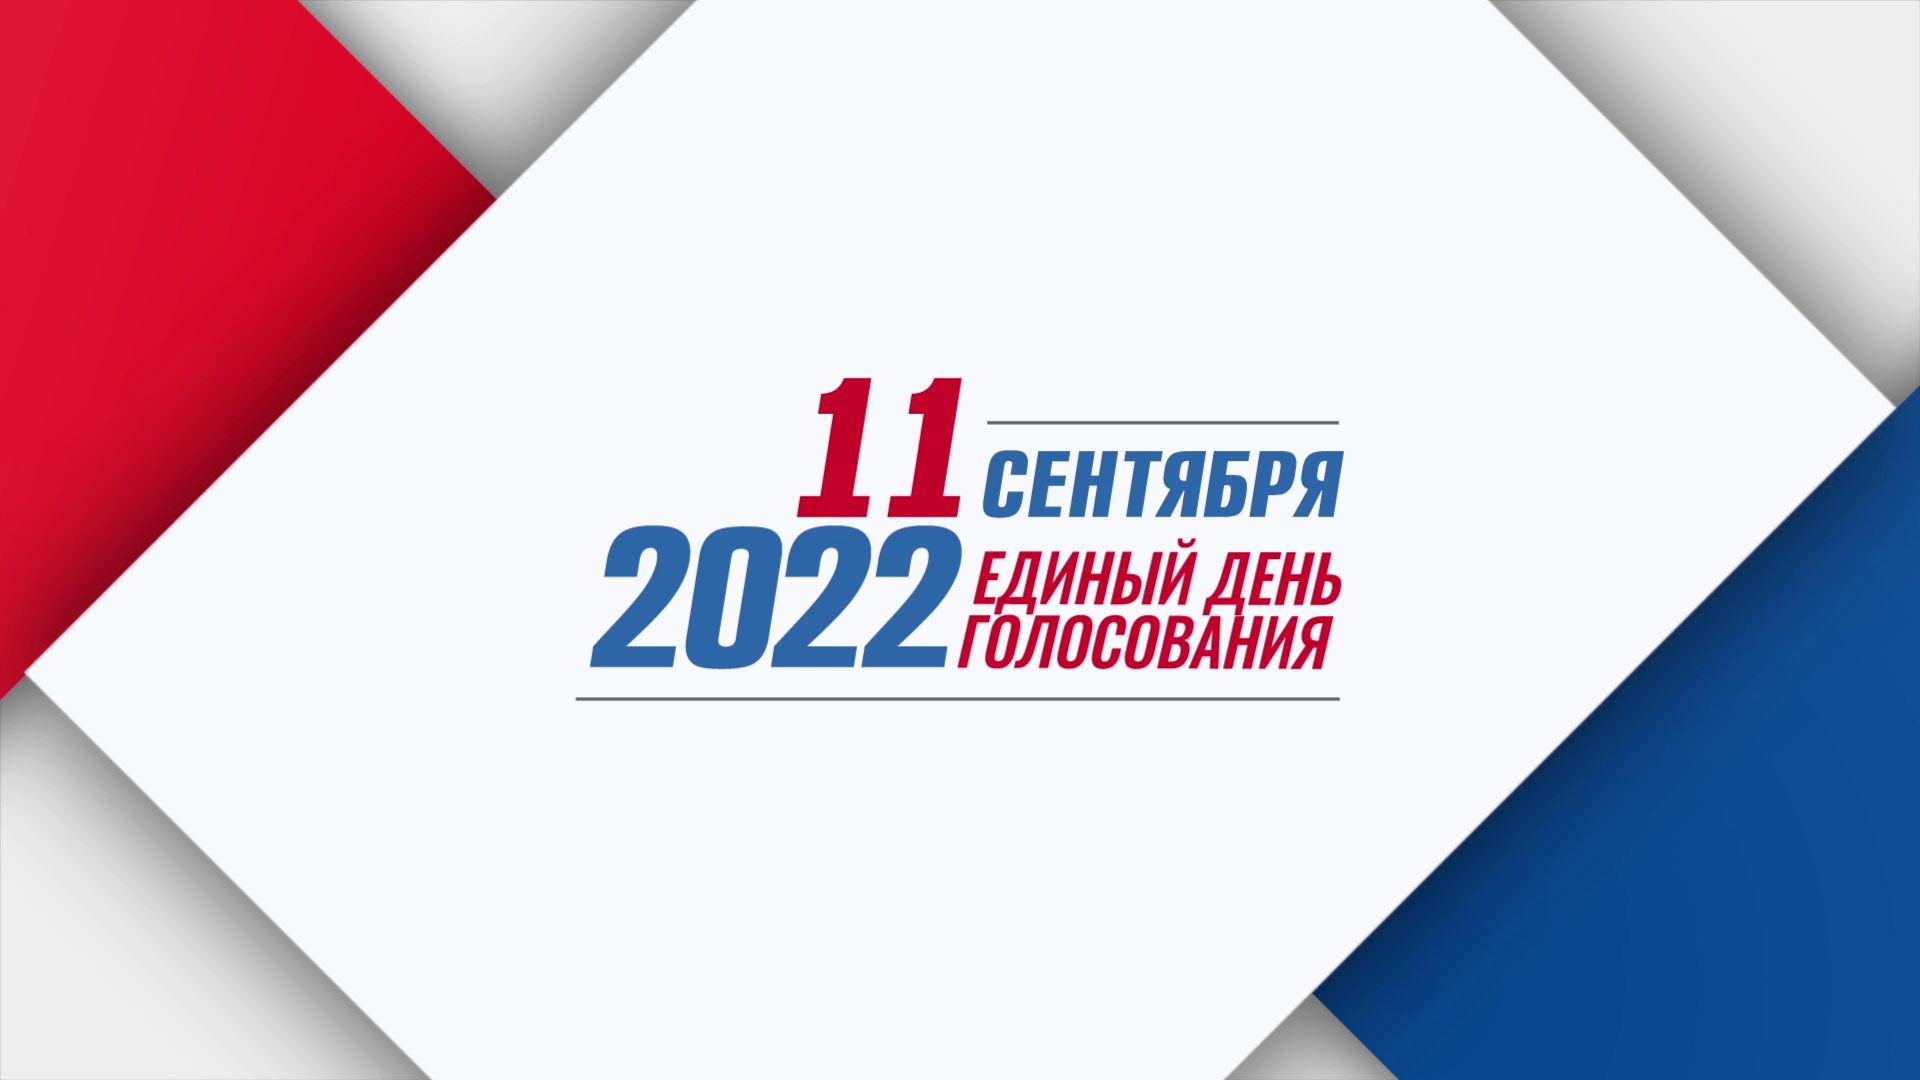 Выборы сентябрь 24. Единый день голосования 2022. Единый день голосования в 2022 году. Логотип единого дня голосования. Выборы плакат.